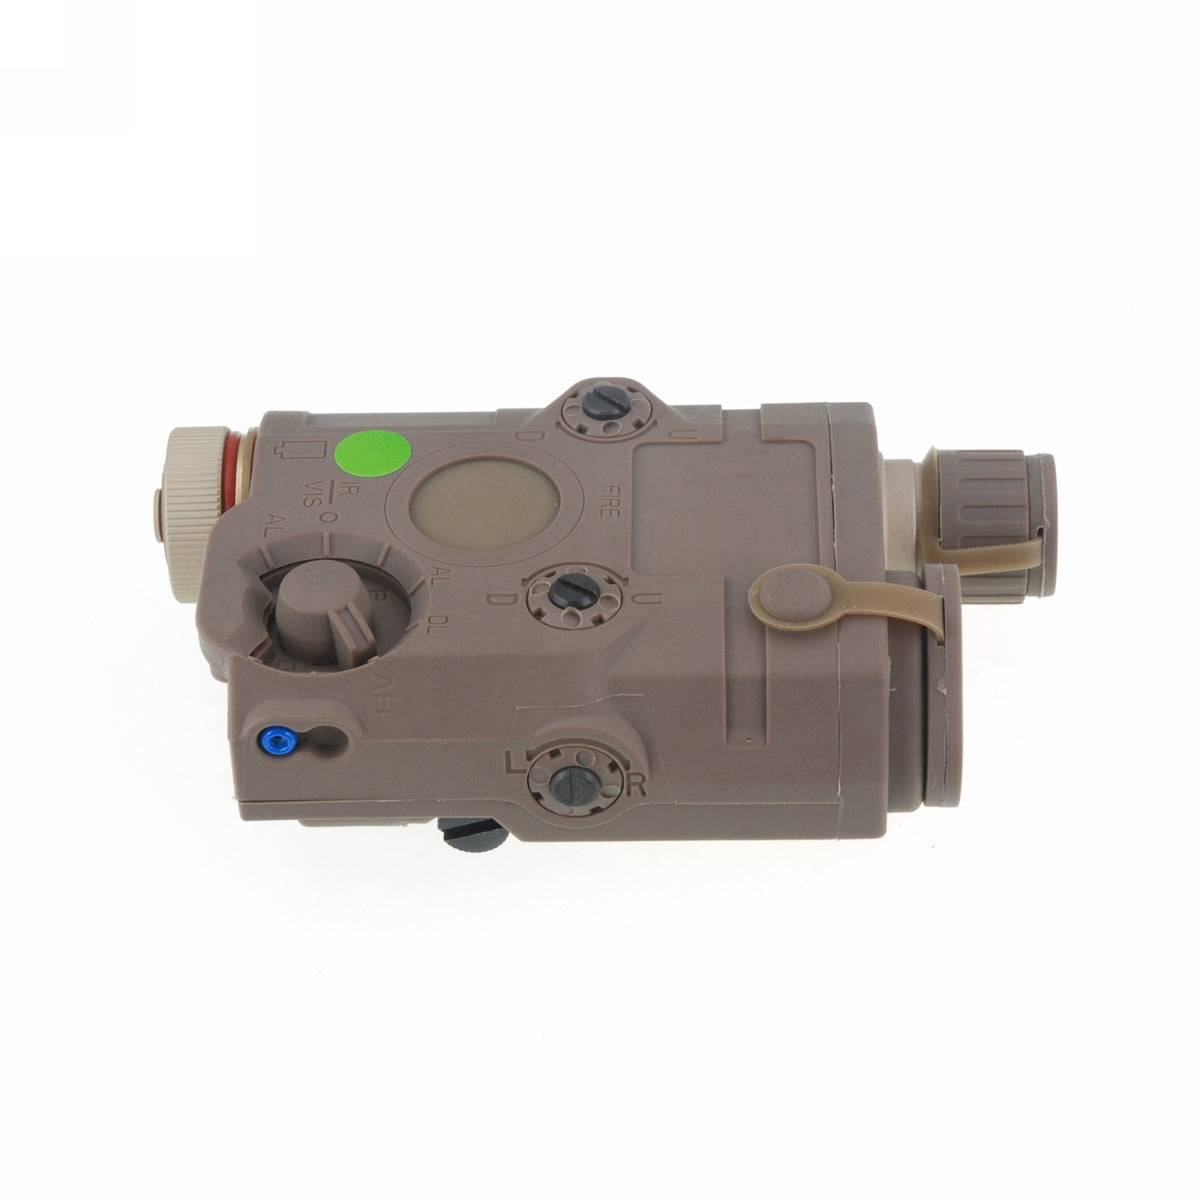 AN-PEQ-15 LED White Light w/Green Laser